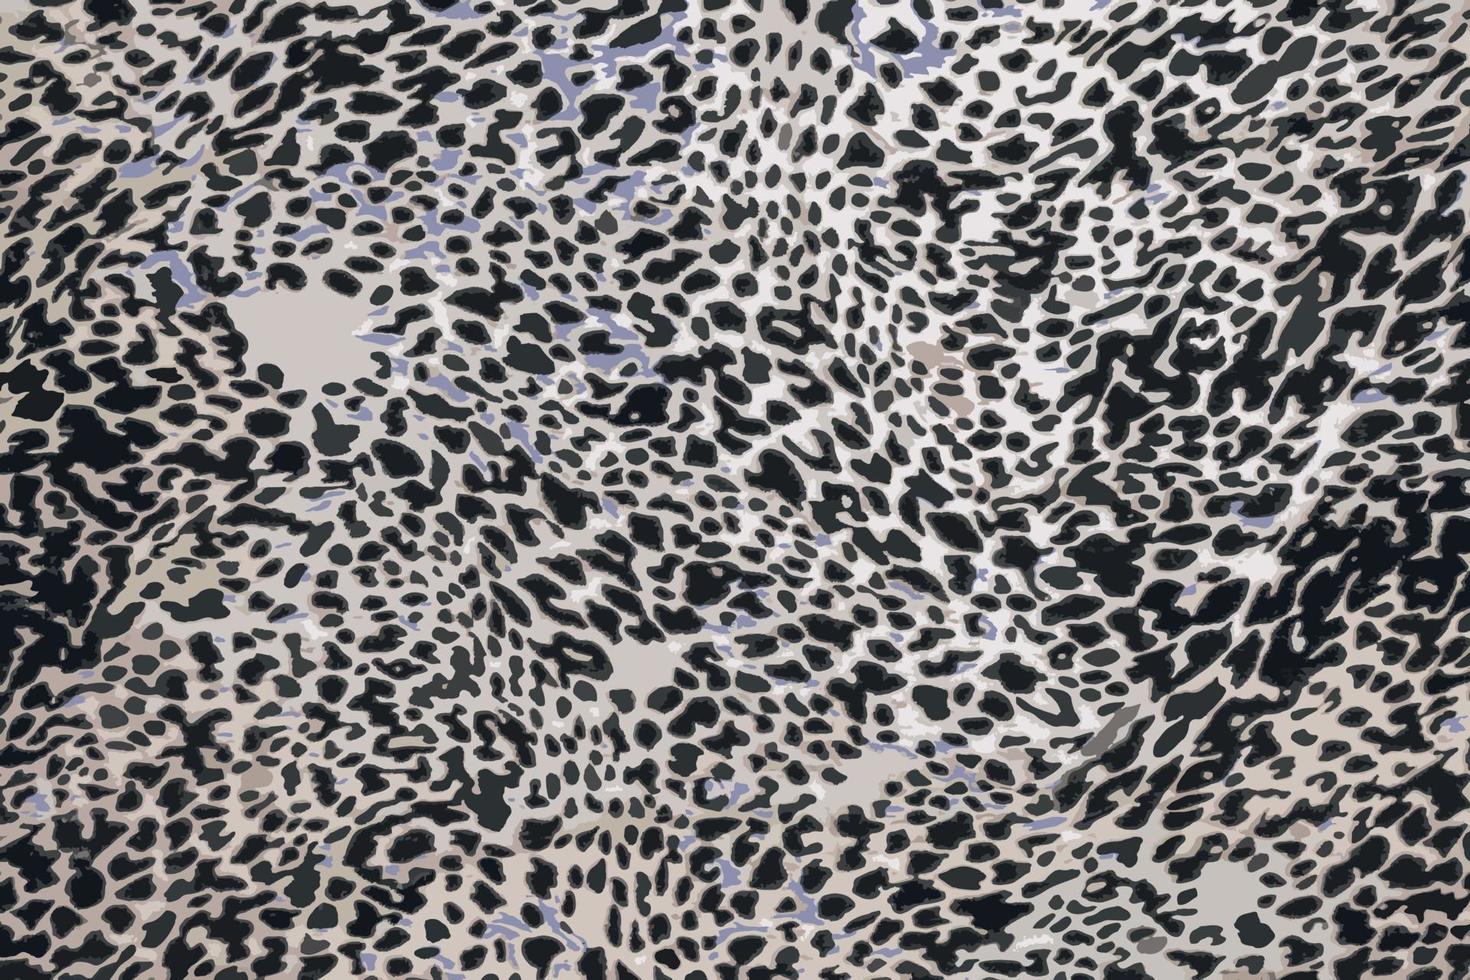 realistisch vector illustratie van achtergrond met luipaard textuur, dichtbij omhoog. luipaard geverfd kleding stof.